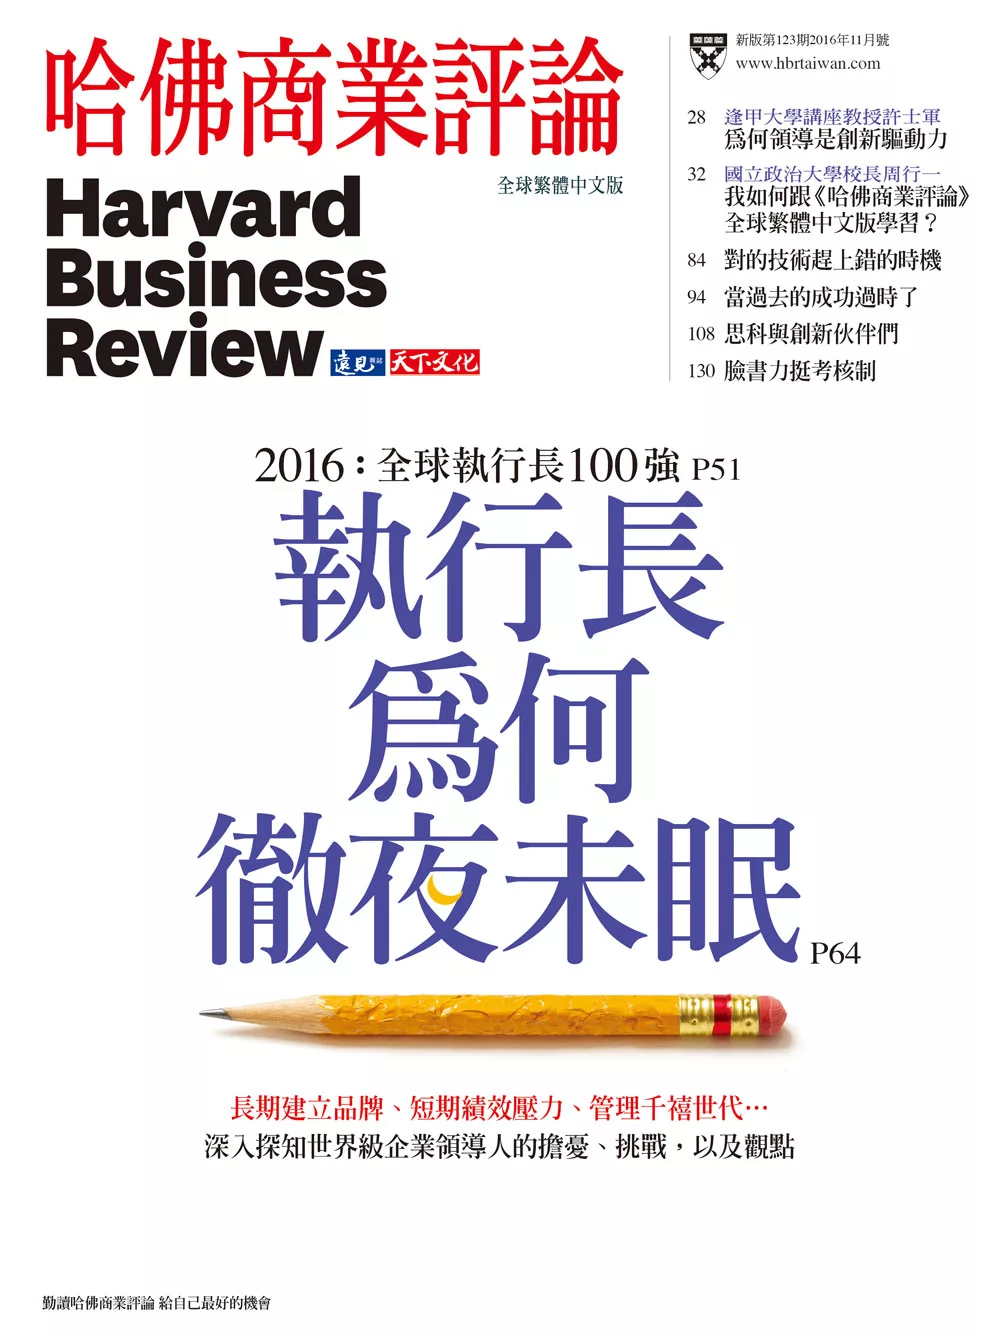 哈佛商業評論全球中文版 11月號 / 2016年第123期 (電子雜誌)